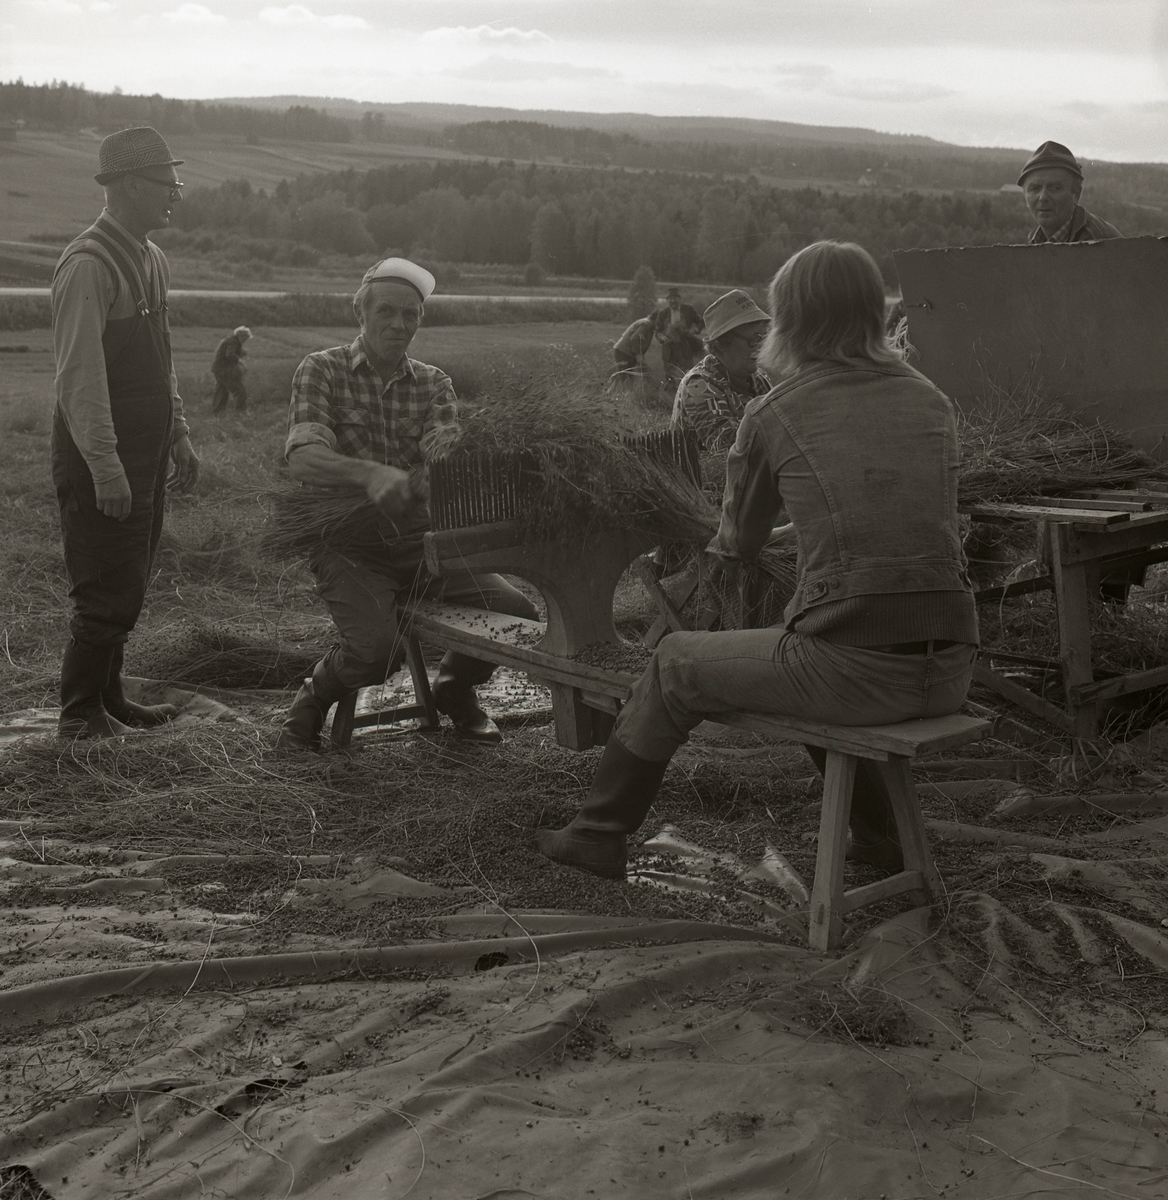 En grupp människor arbetar med att häckla lin under en septemberdag 1974. I bakgrunden syns människor som arbetar med att riva lin.